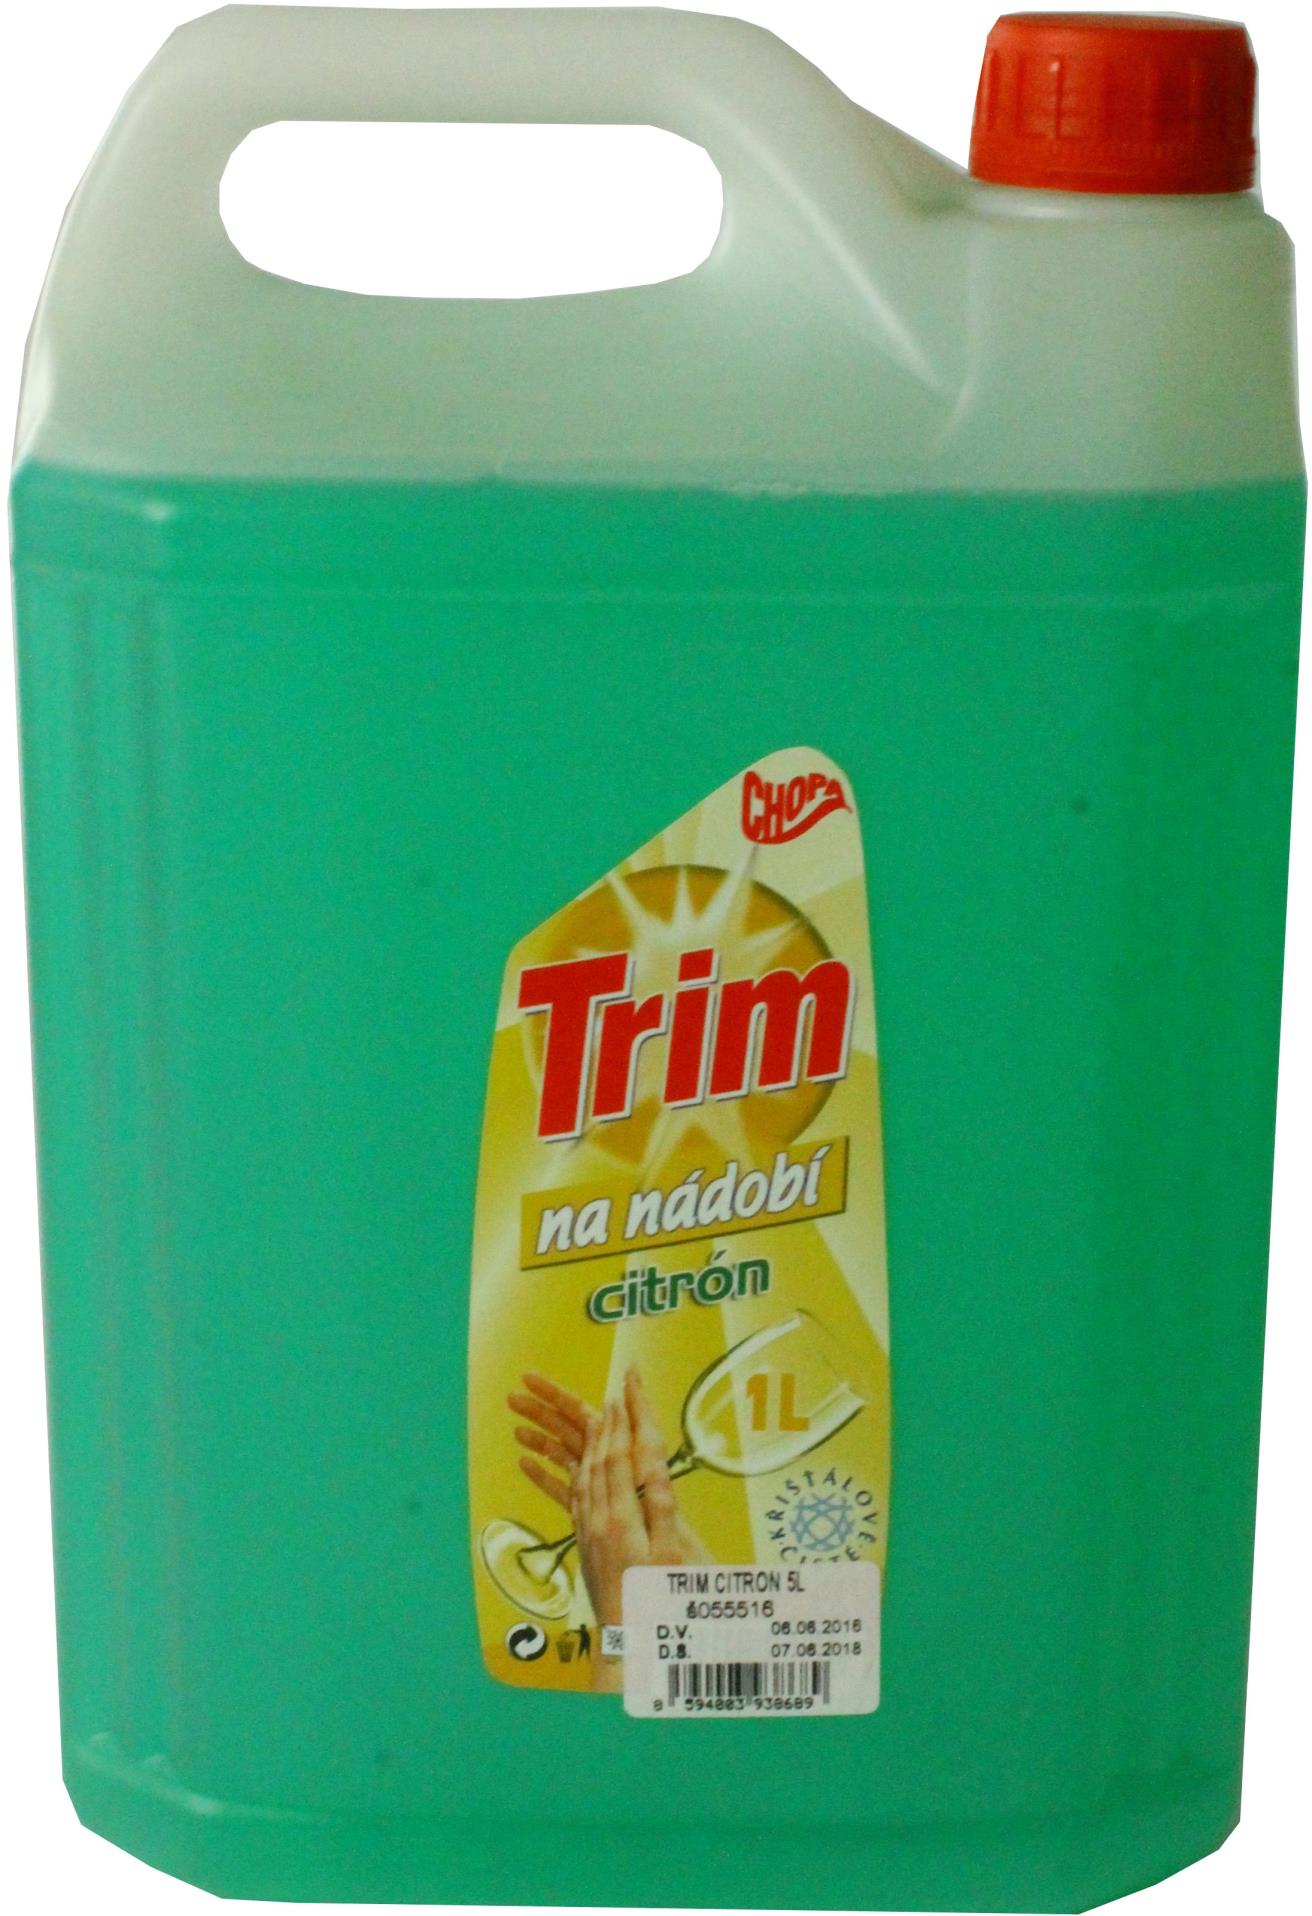 Trim Prostředek na nádobí - TRIM citron, 5 l